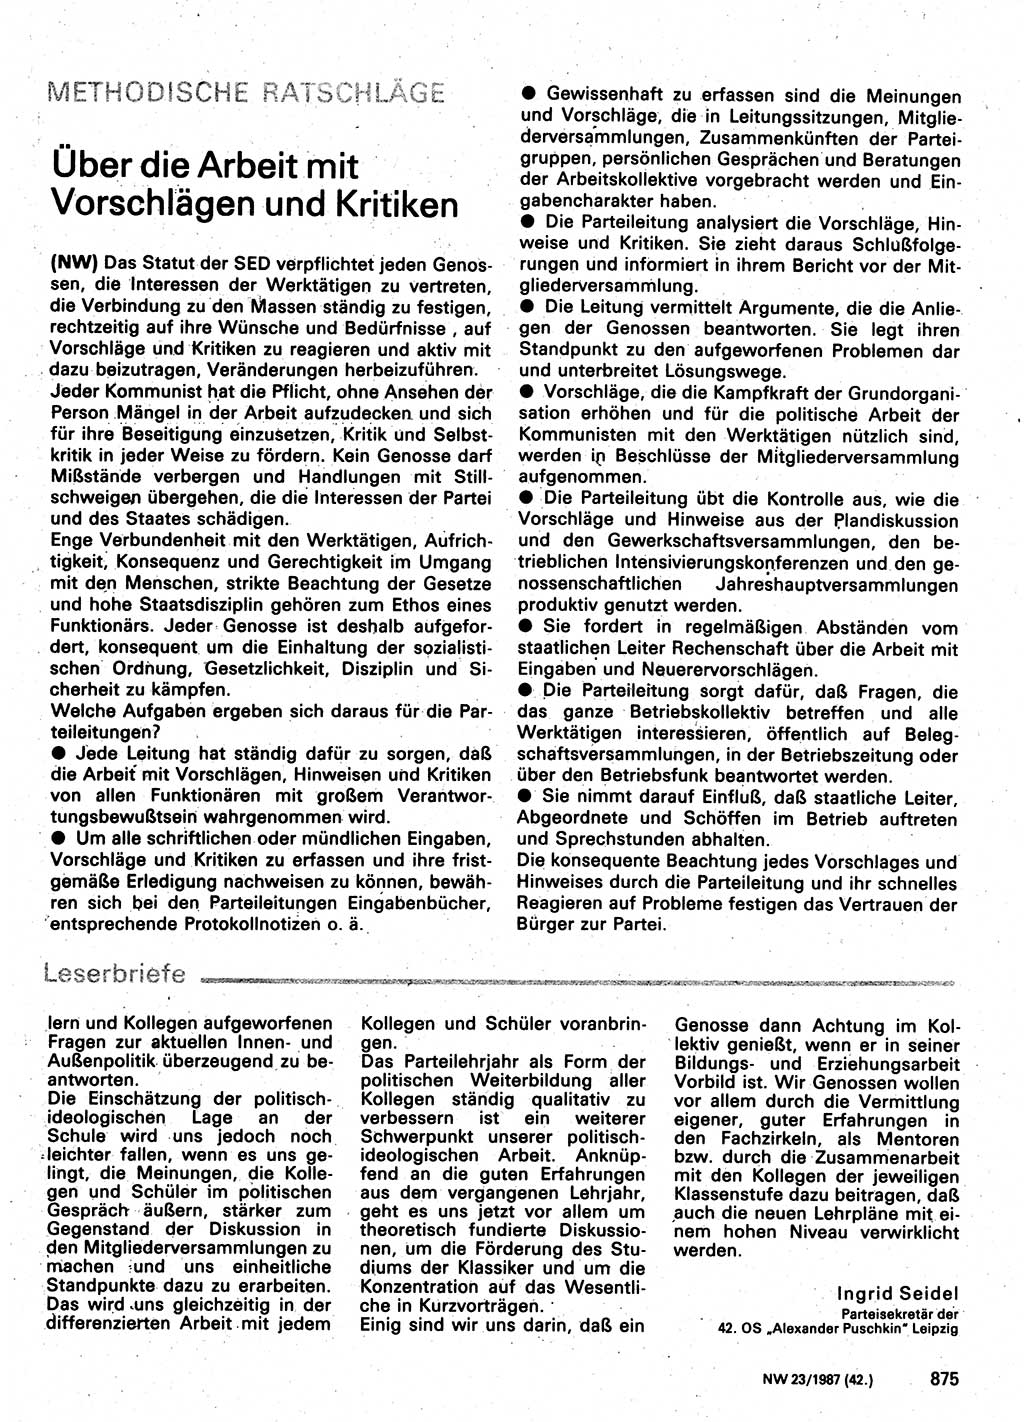 Neuer Weg (NW), Organ des Zentralkomitees (ZK) der SED (Sozialistische Einheitspartei Deutschlands) für Fragen des Parteilebens, 42. Jahrgang [Deutsche Demokratische Republik (DDR)] 1987, Seite 875 (NW ZK SED DDR 1987, S. 875)